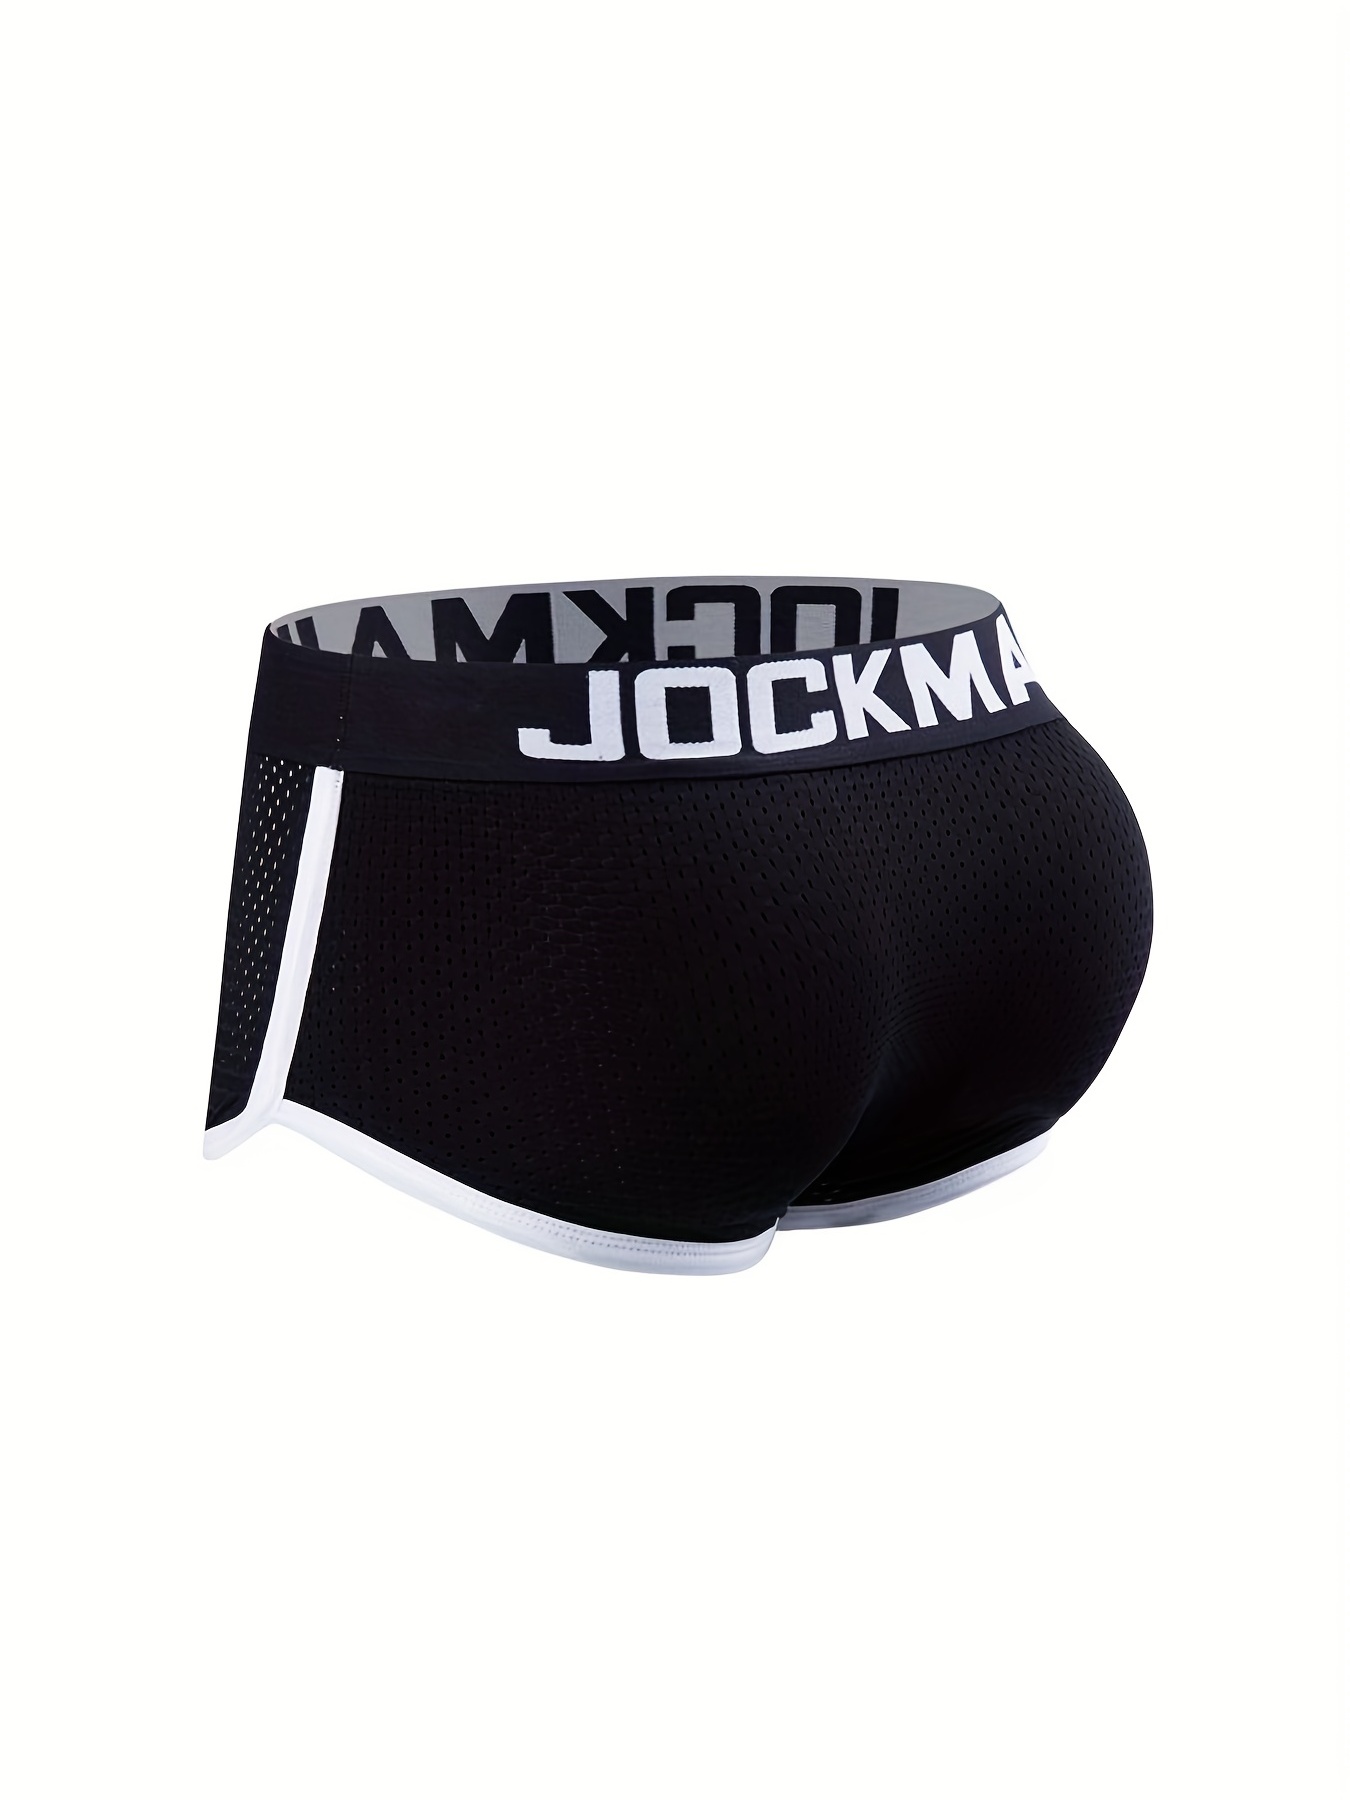 JOCKMAIL Fashion Hot Men Underwear Boxers Mesh Men Panties Male Underpants  (M, Black) : : Clothing, Shoes & Accessories